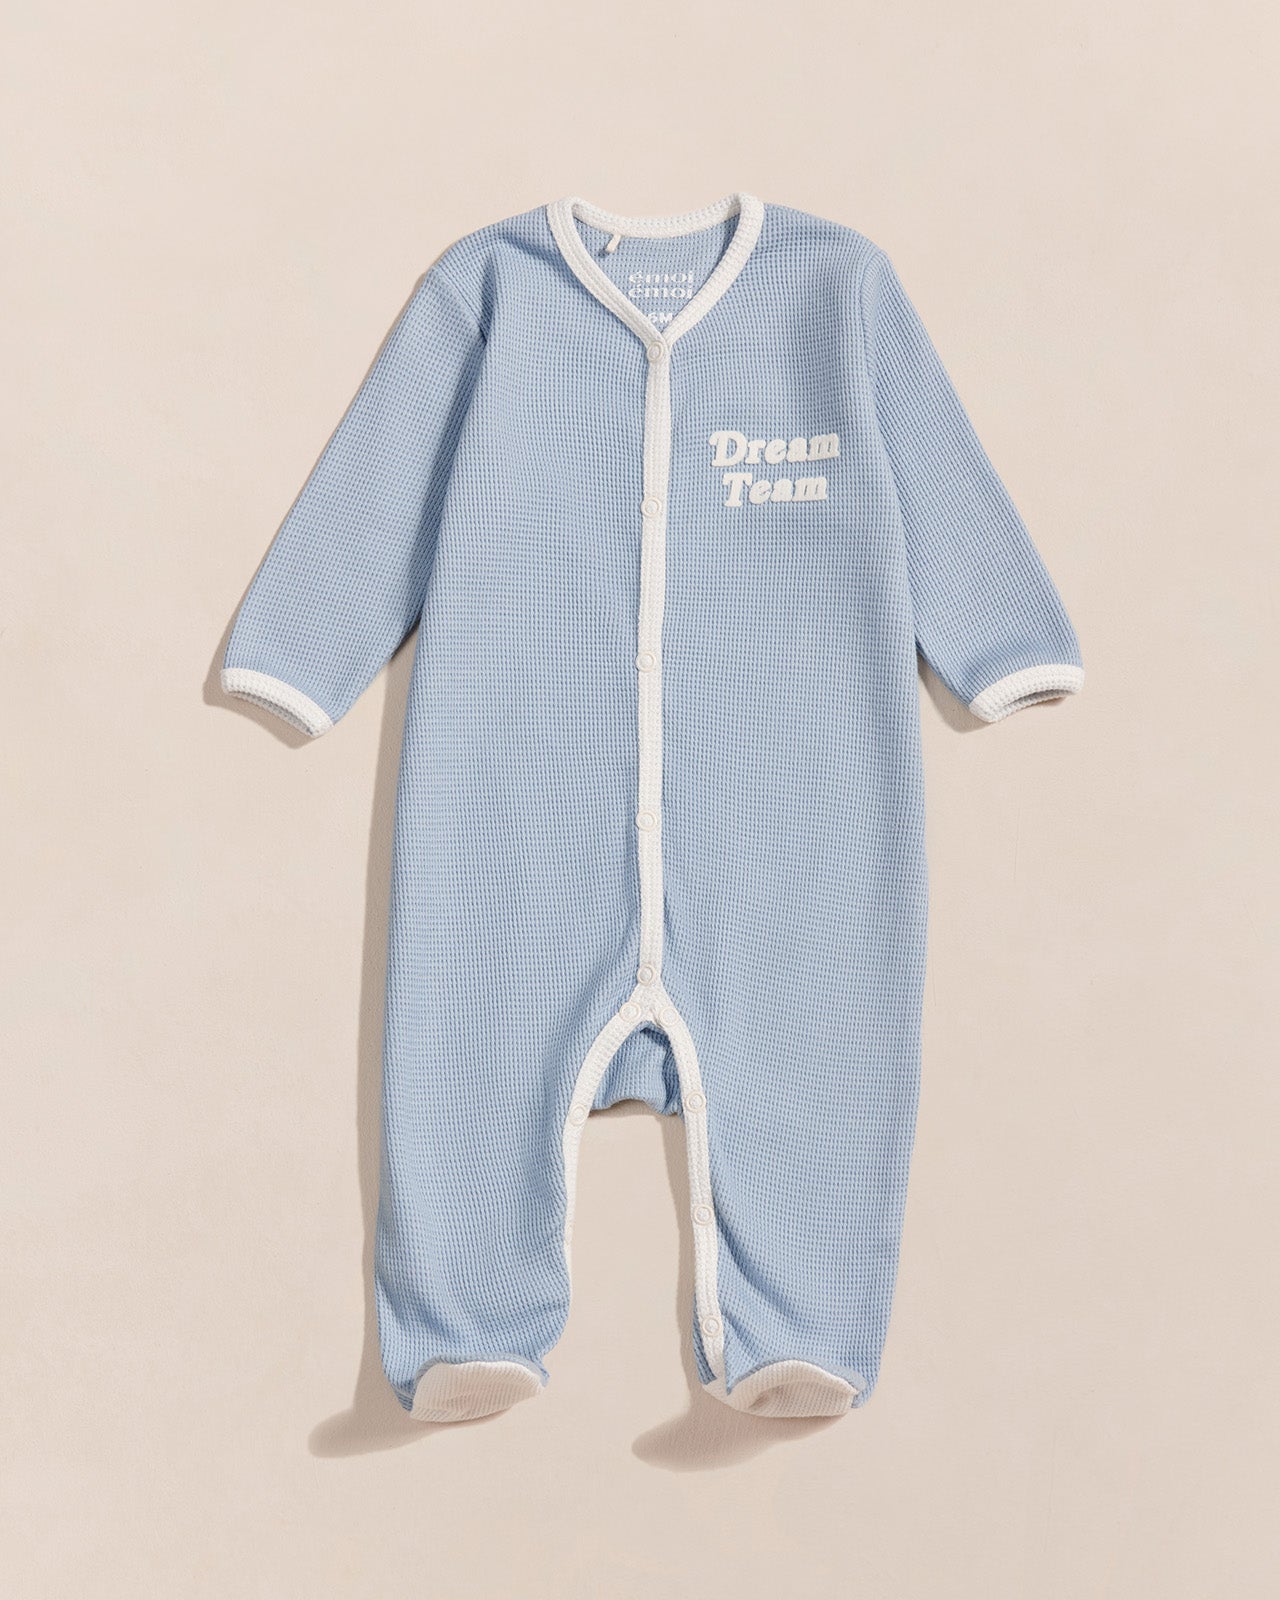 Le pyjama bébé Baby love en coton bio nid d'abeille - praliné